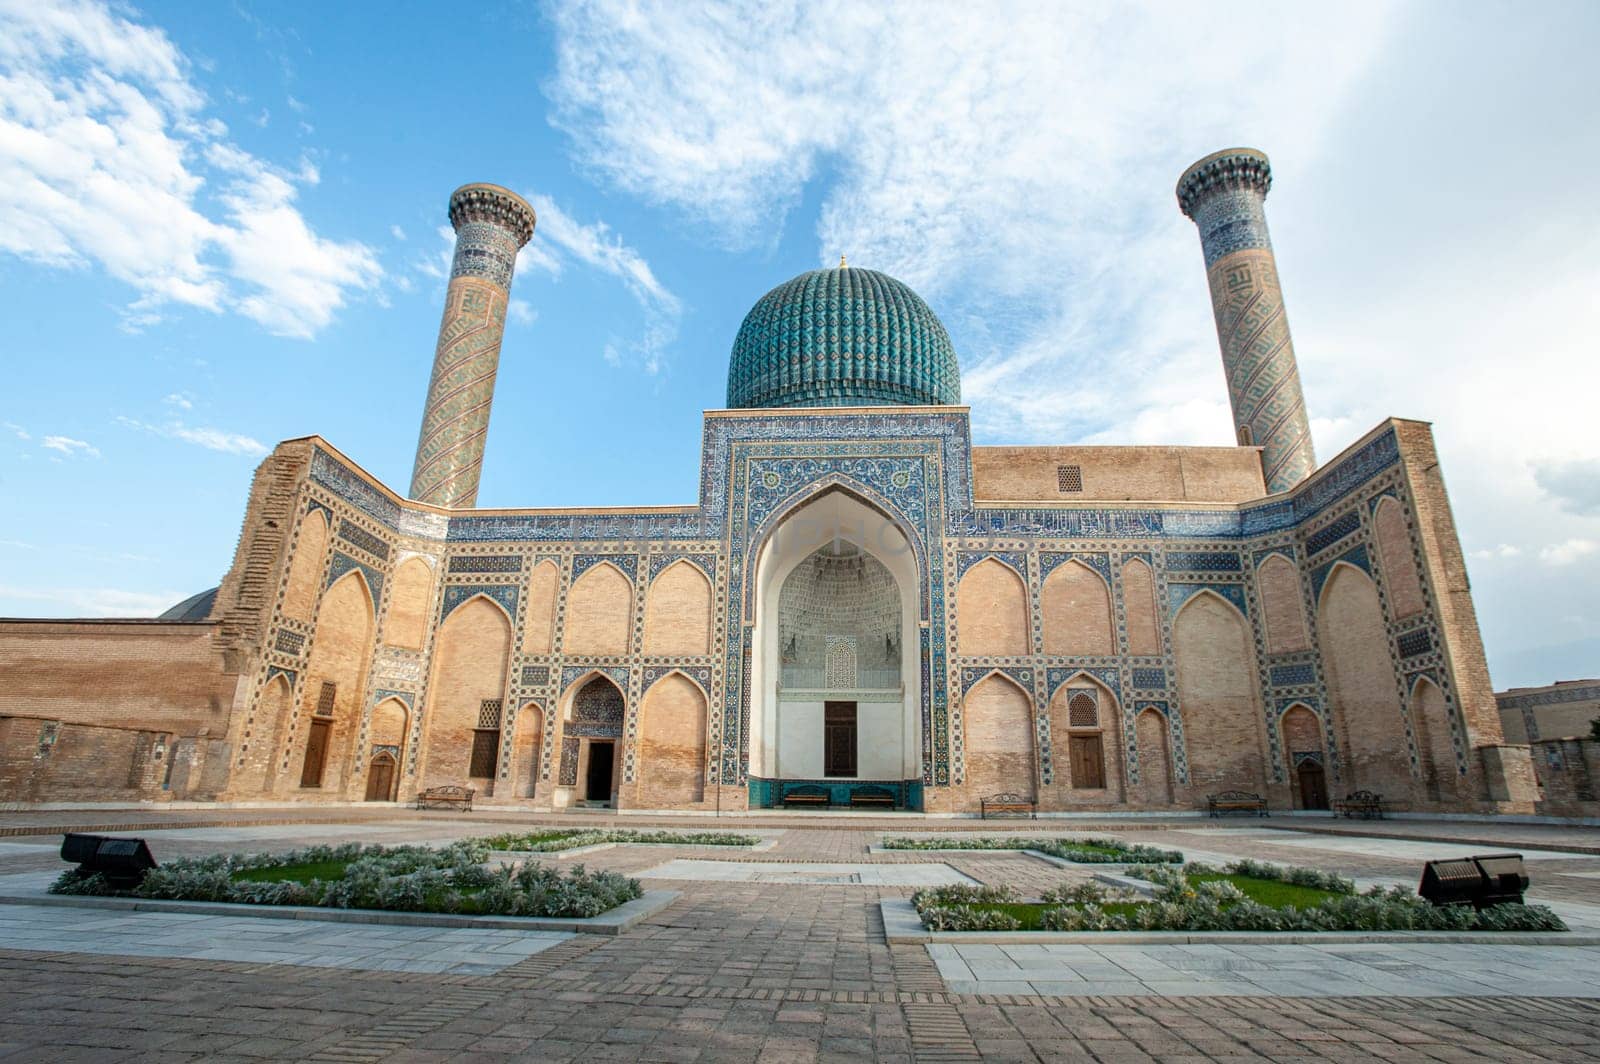 The mausoleum of Amir Timur in Samarkand, Uzbekistan by A_Karim